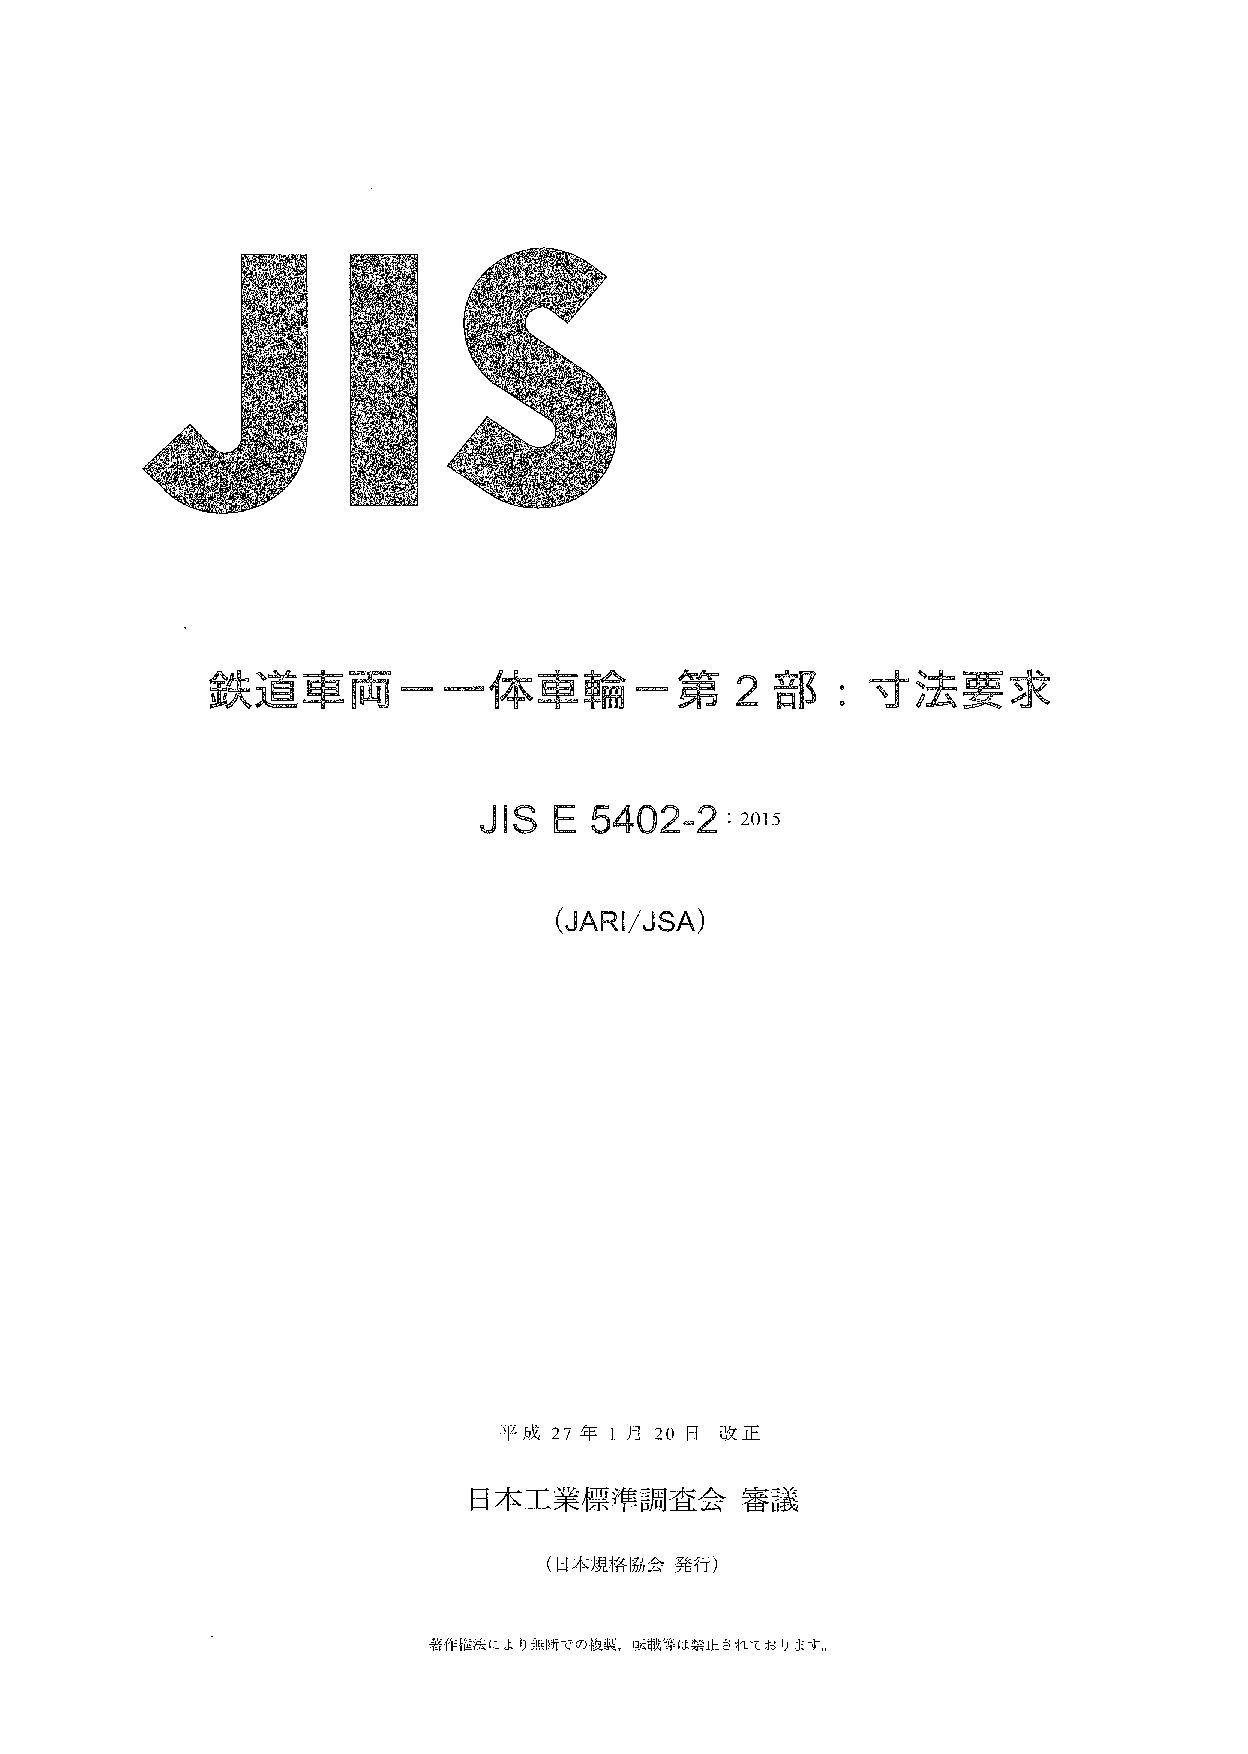 JIS E 5402-2:2015